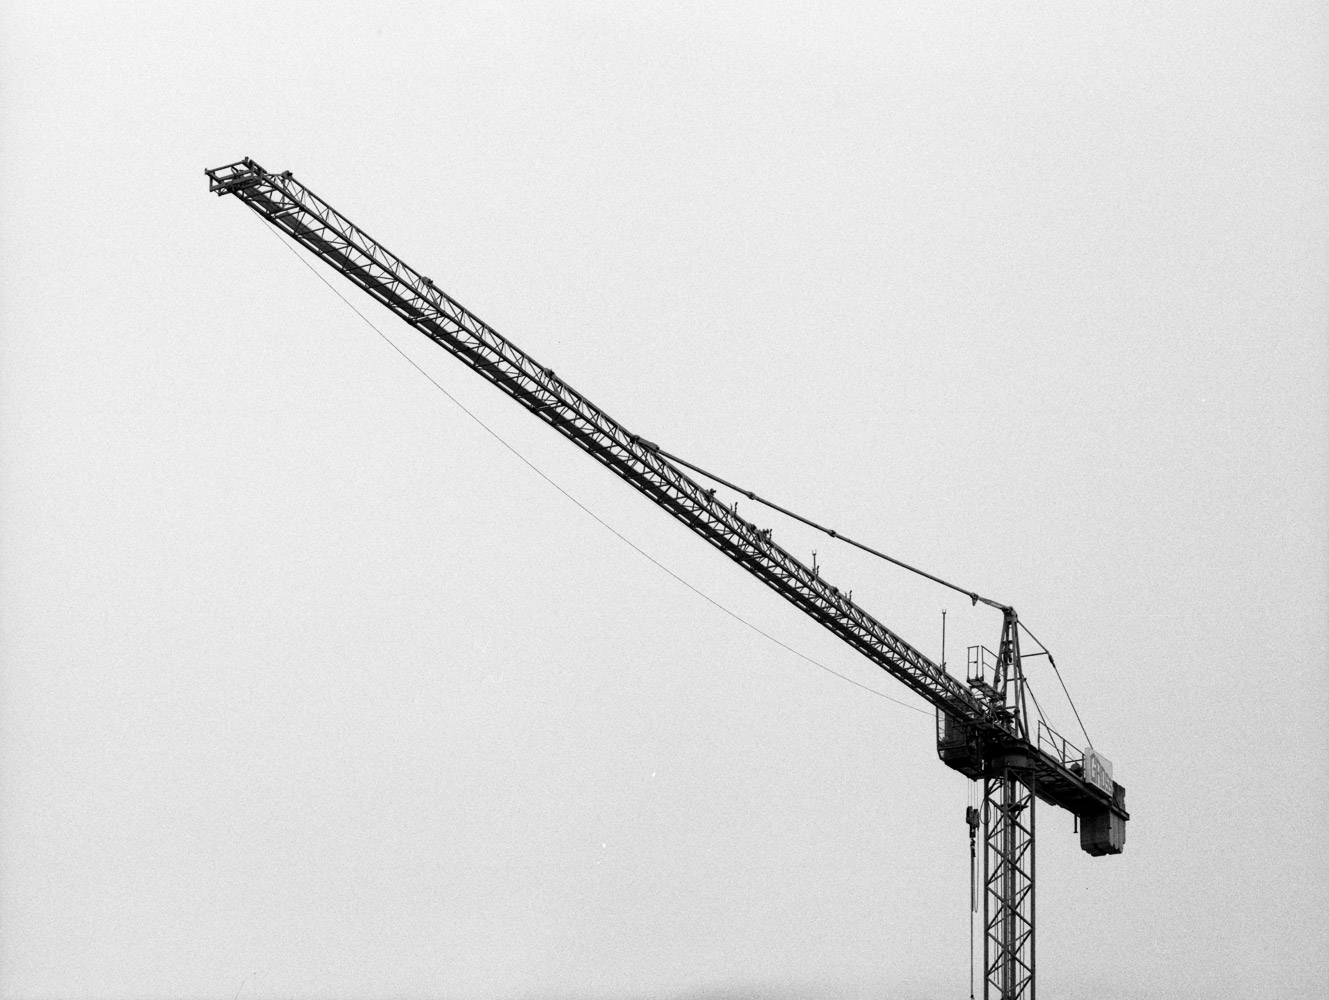 Crane #1